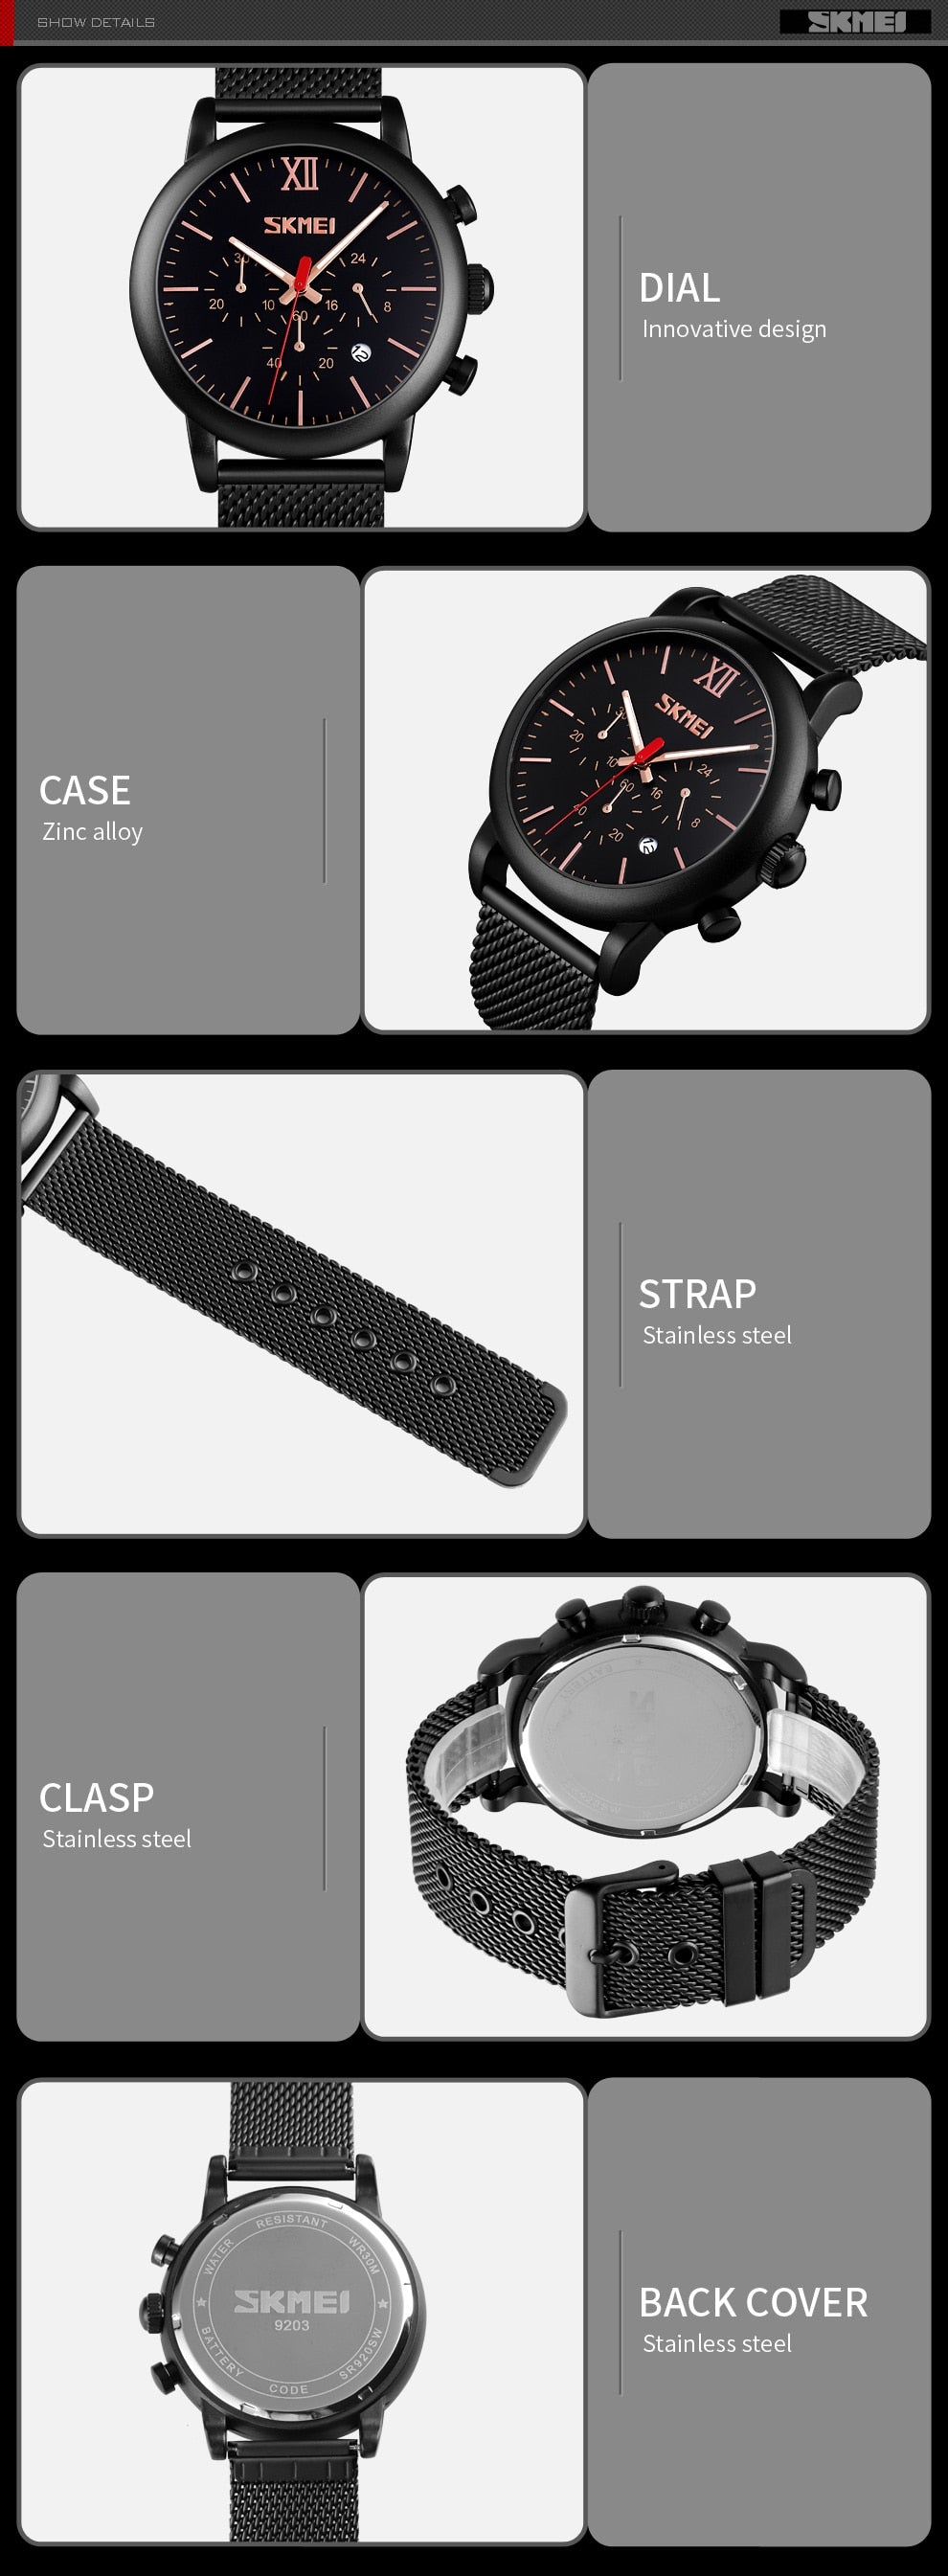 Original Trendy Stylish SKMEI Wristwatch Watch for Men - SKMEI 17